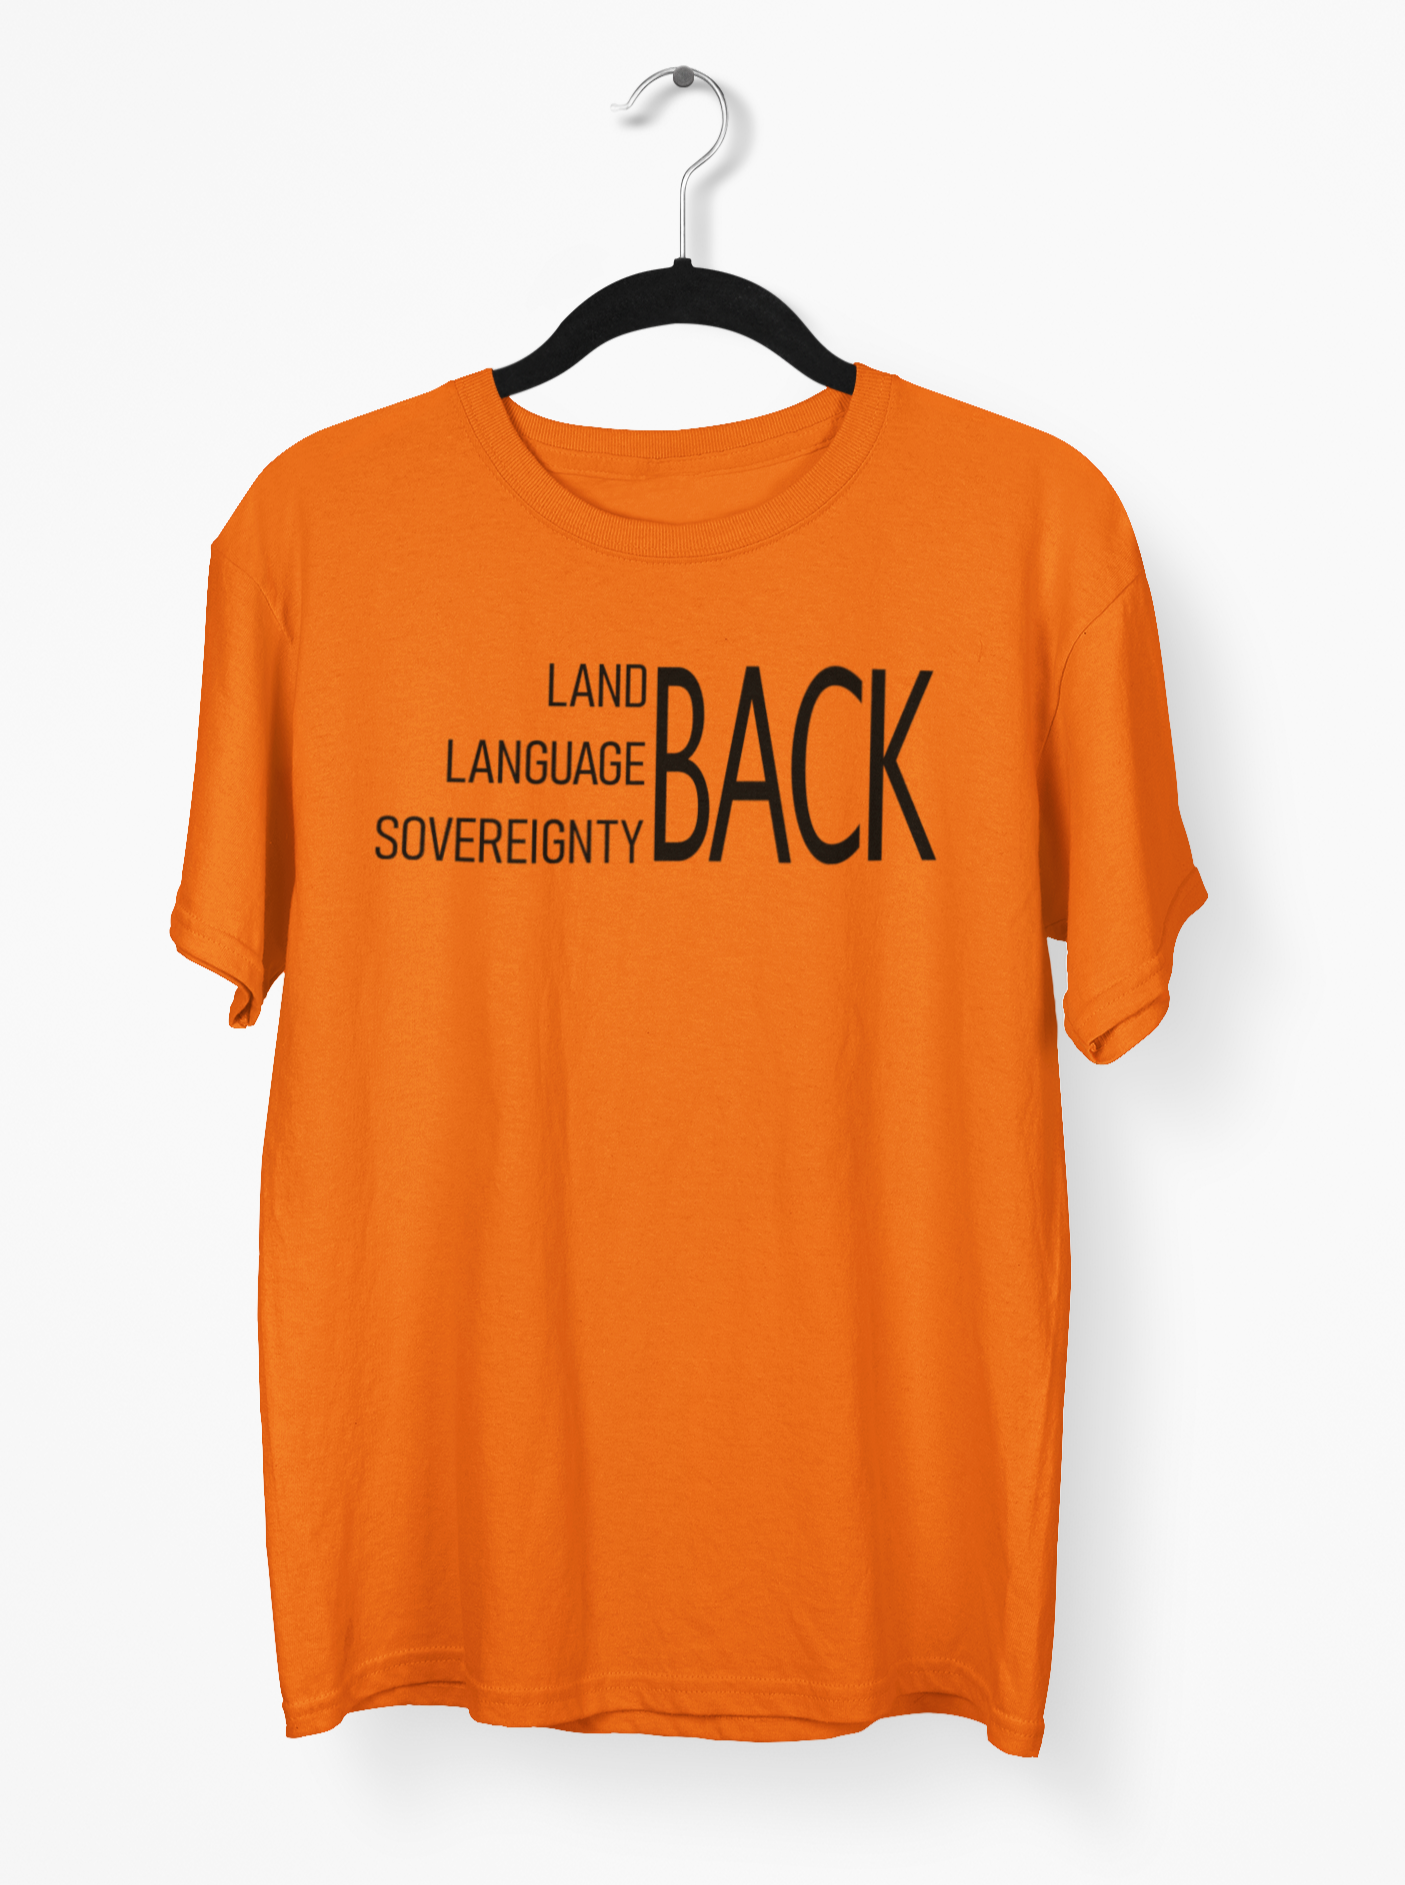 Land Language Sovereignty T-Shirt - Orange